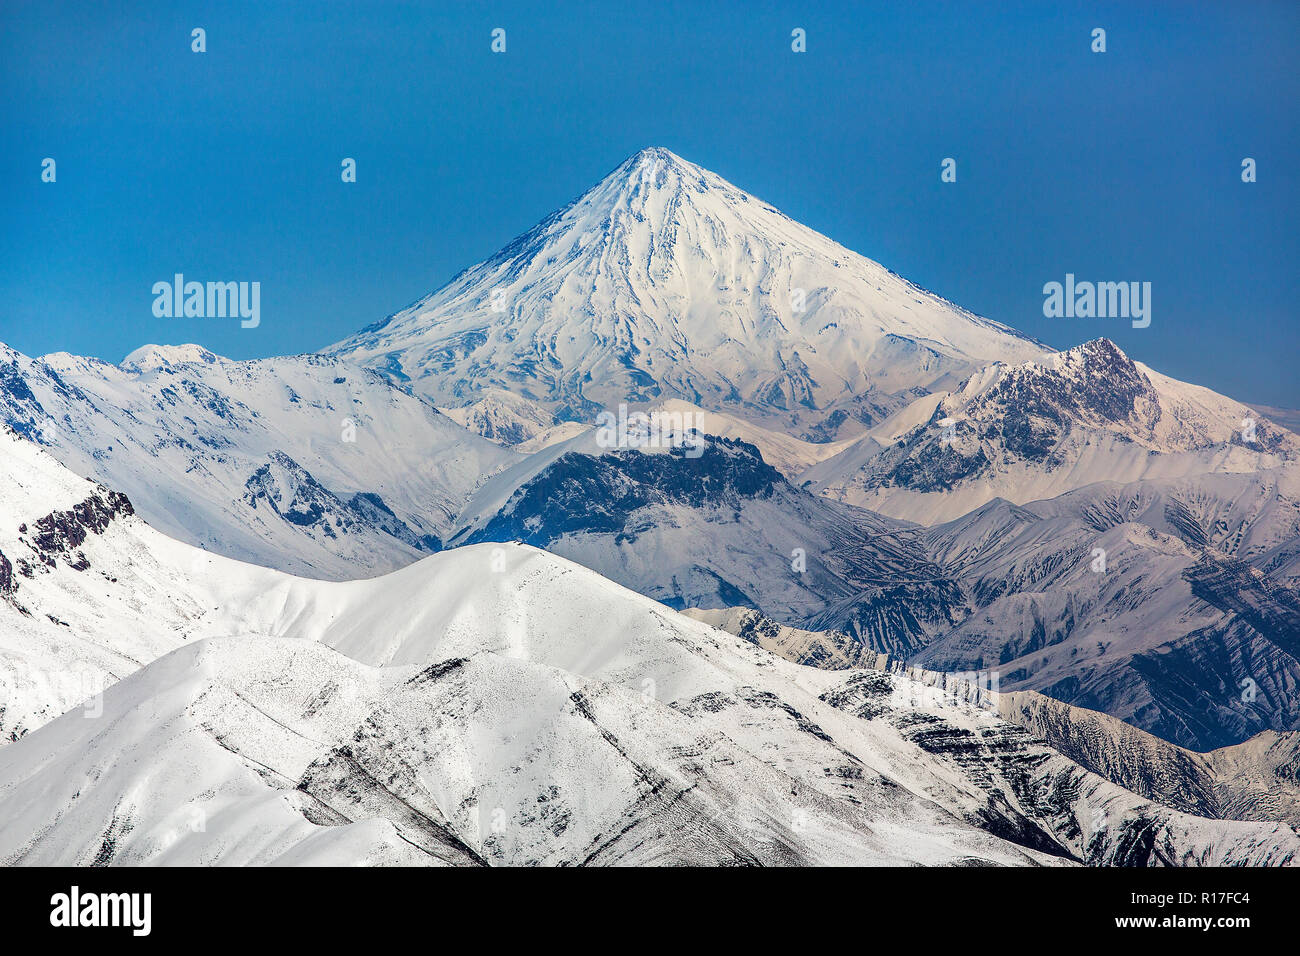 Mount Damavand, einen potenziell aktiver Vulkan, ist ein Stratovulkan, das ist der höchste Berg im Iran und der höchste Vulkan in Asien. Stockfoto